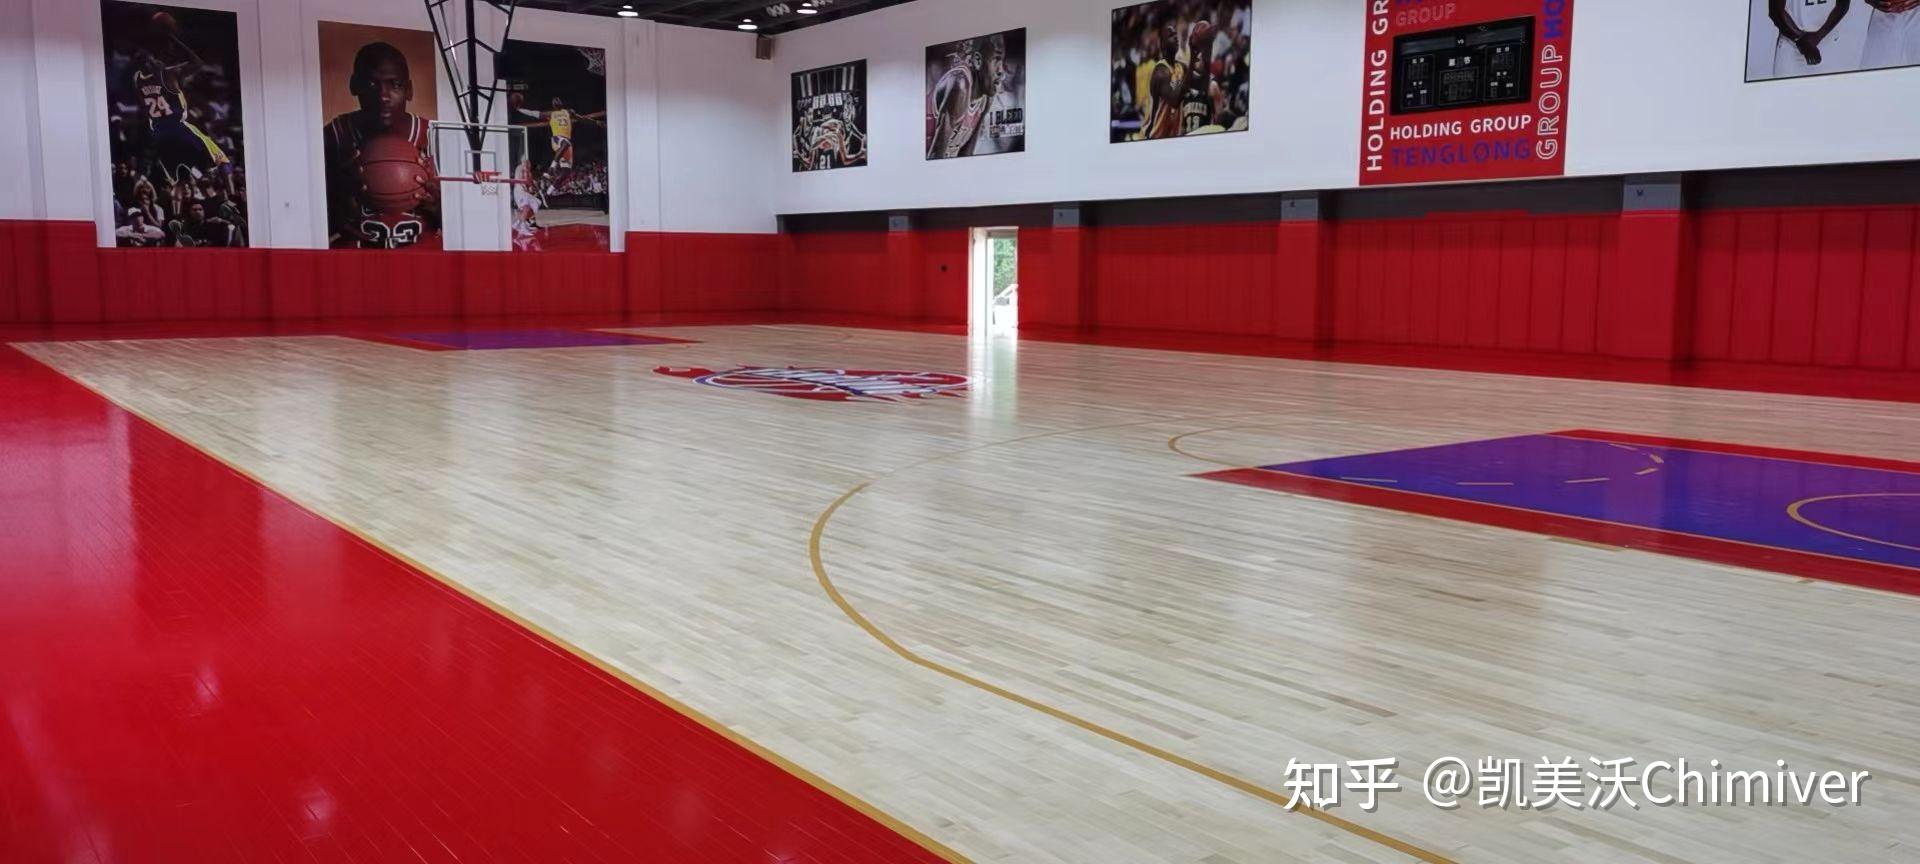 篮球女孩钱红艳_读者生活馆骗老年人钱_买一个篮球馆多少钱